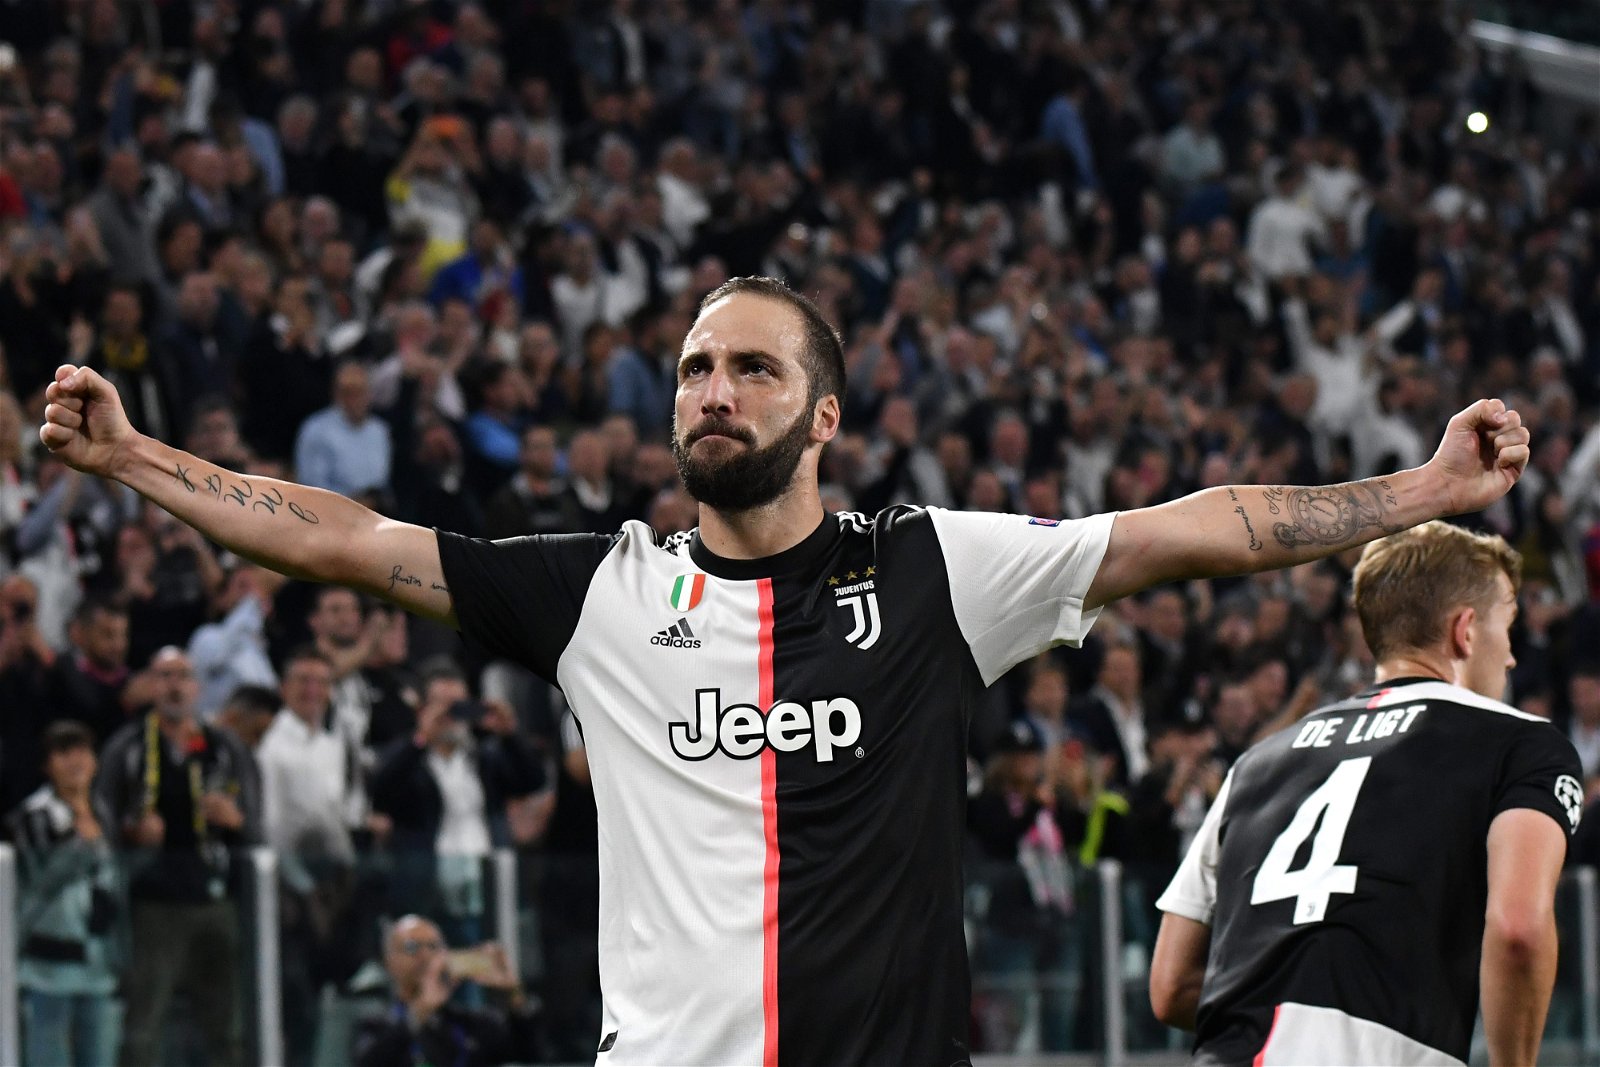 From AC Milan-Juventus to Juventus-AC Milan - Gonzalo Higuain's past 12 months